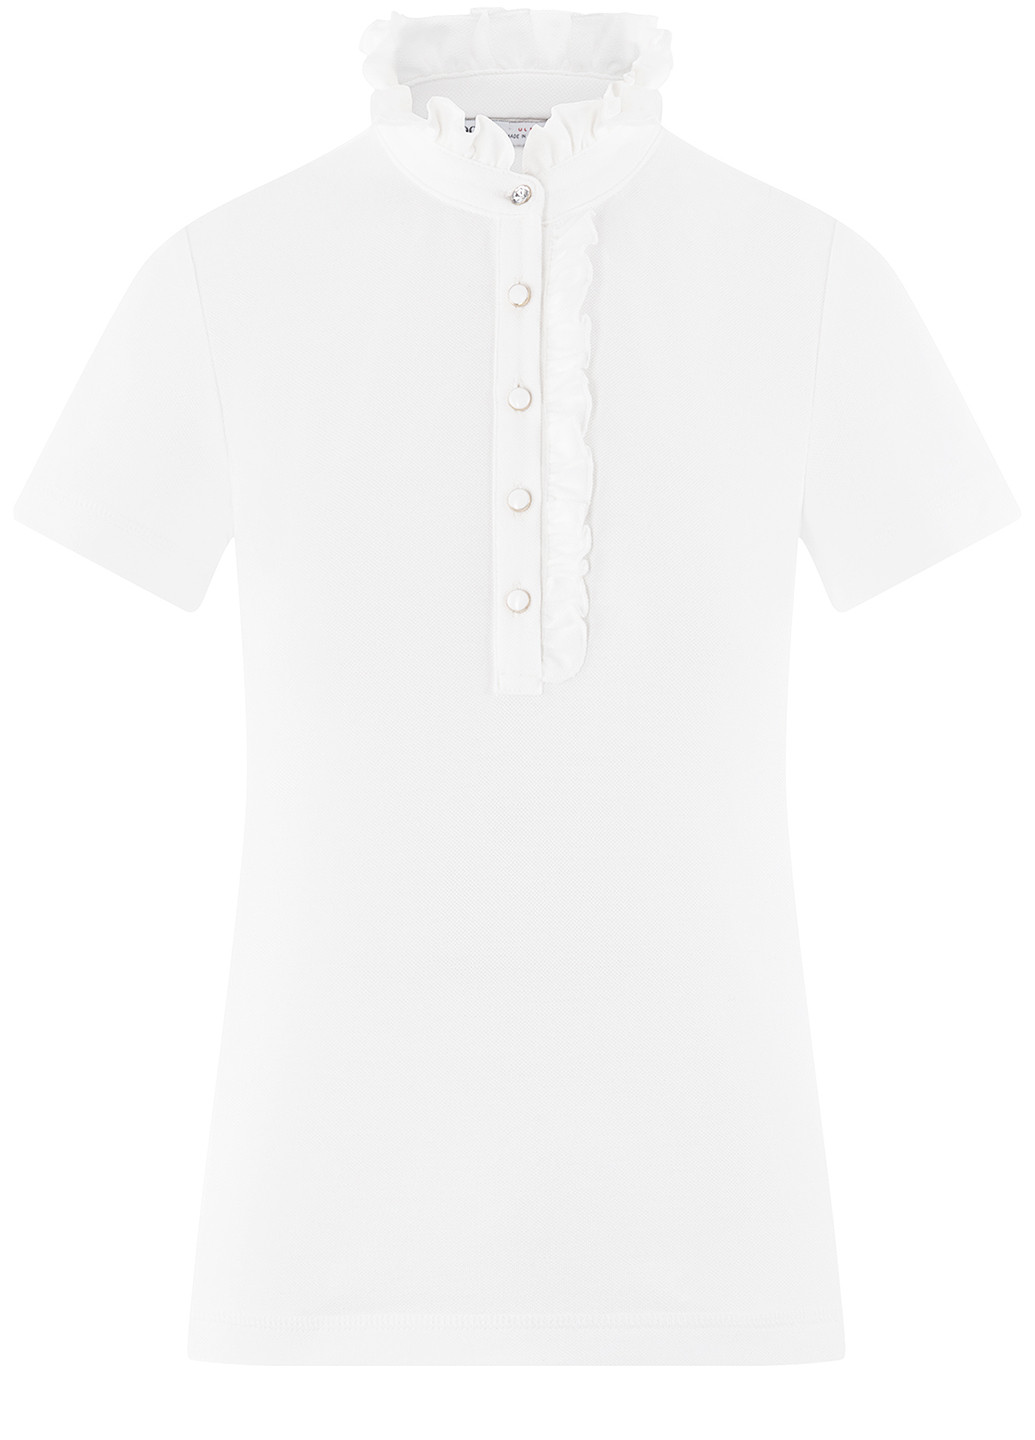 Белая женская футболка-поло Oodji однотонная